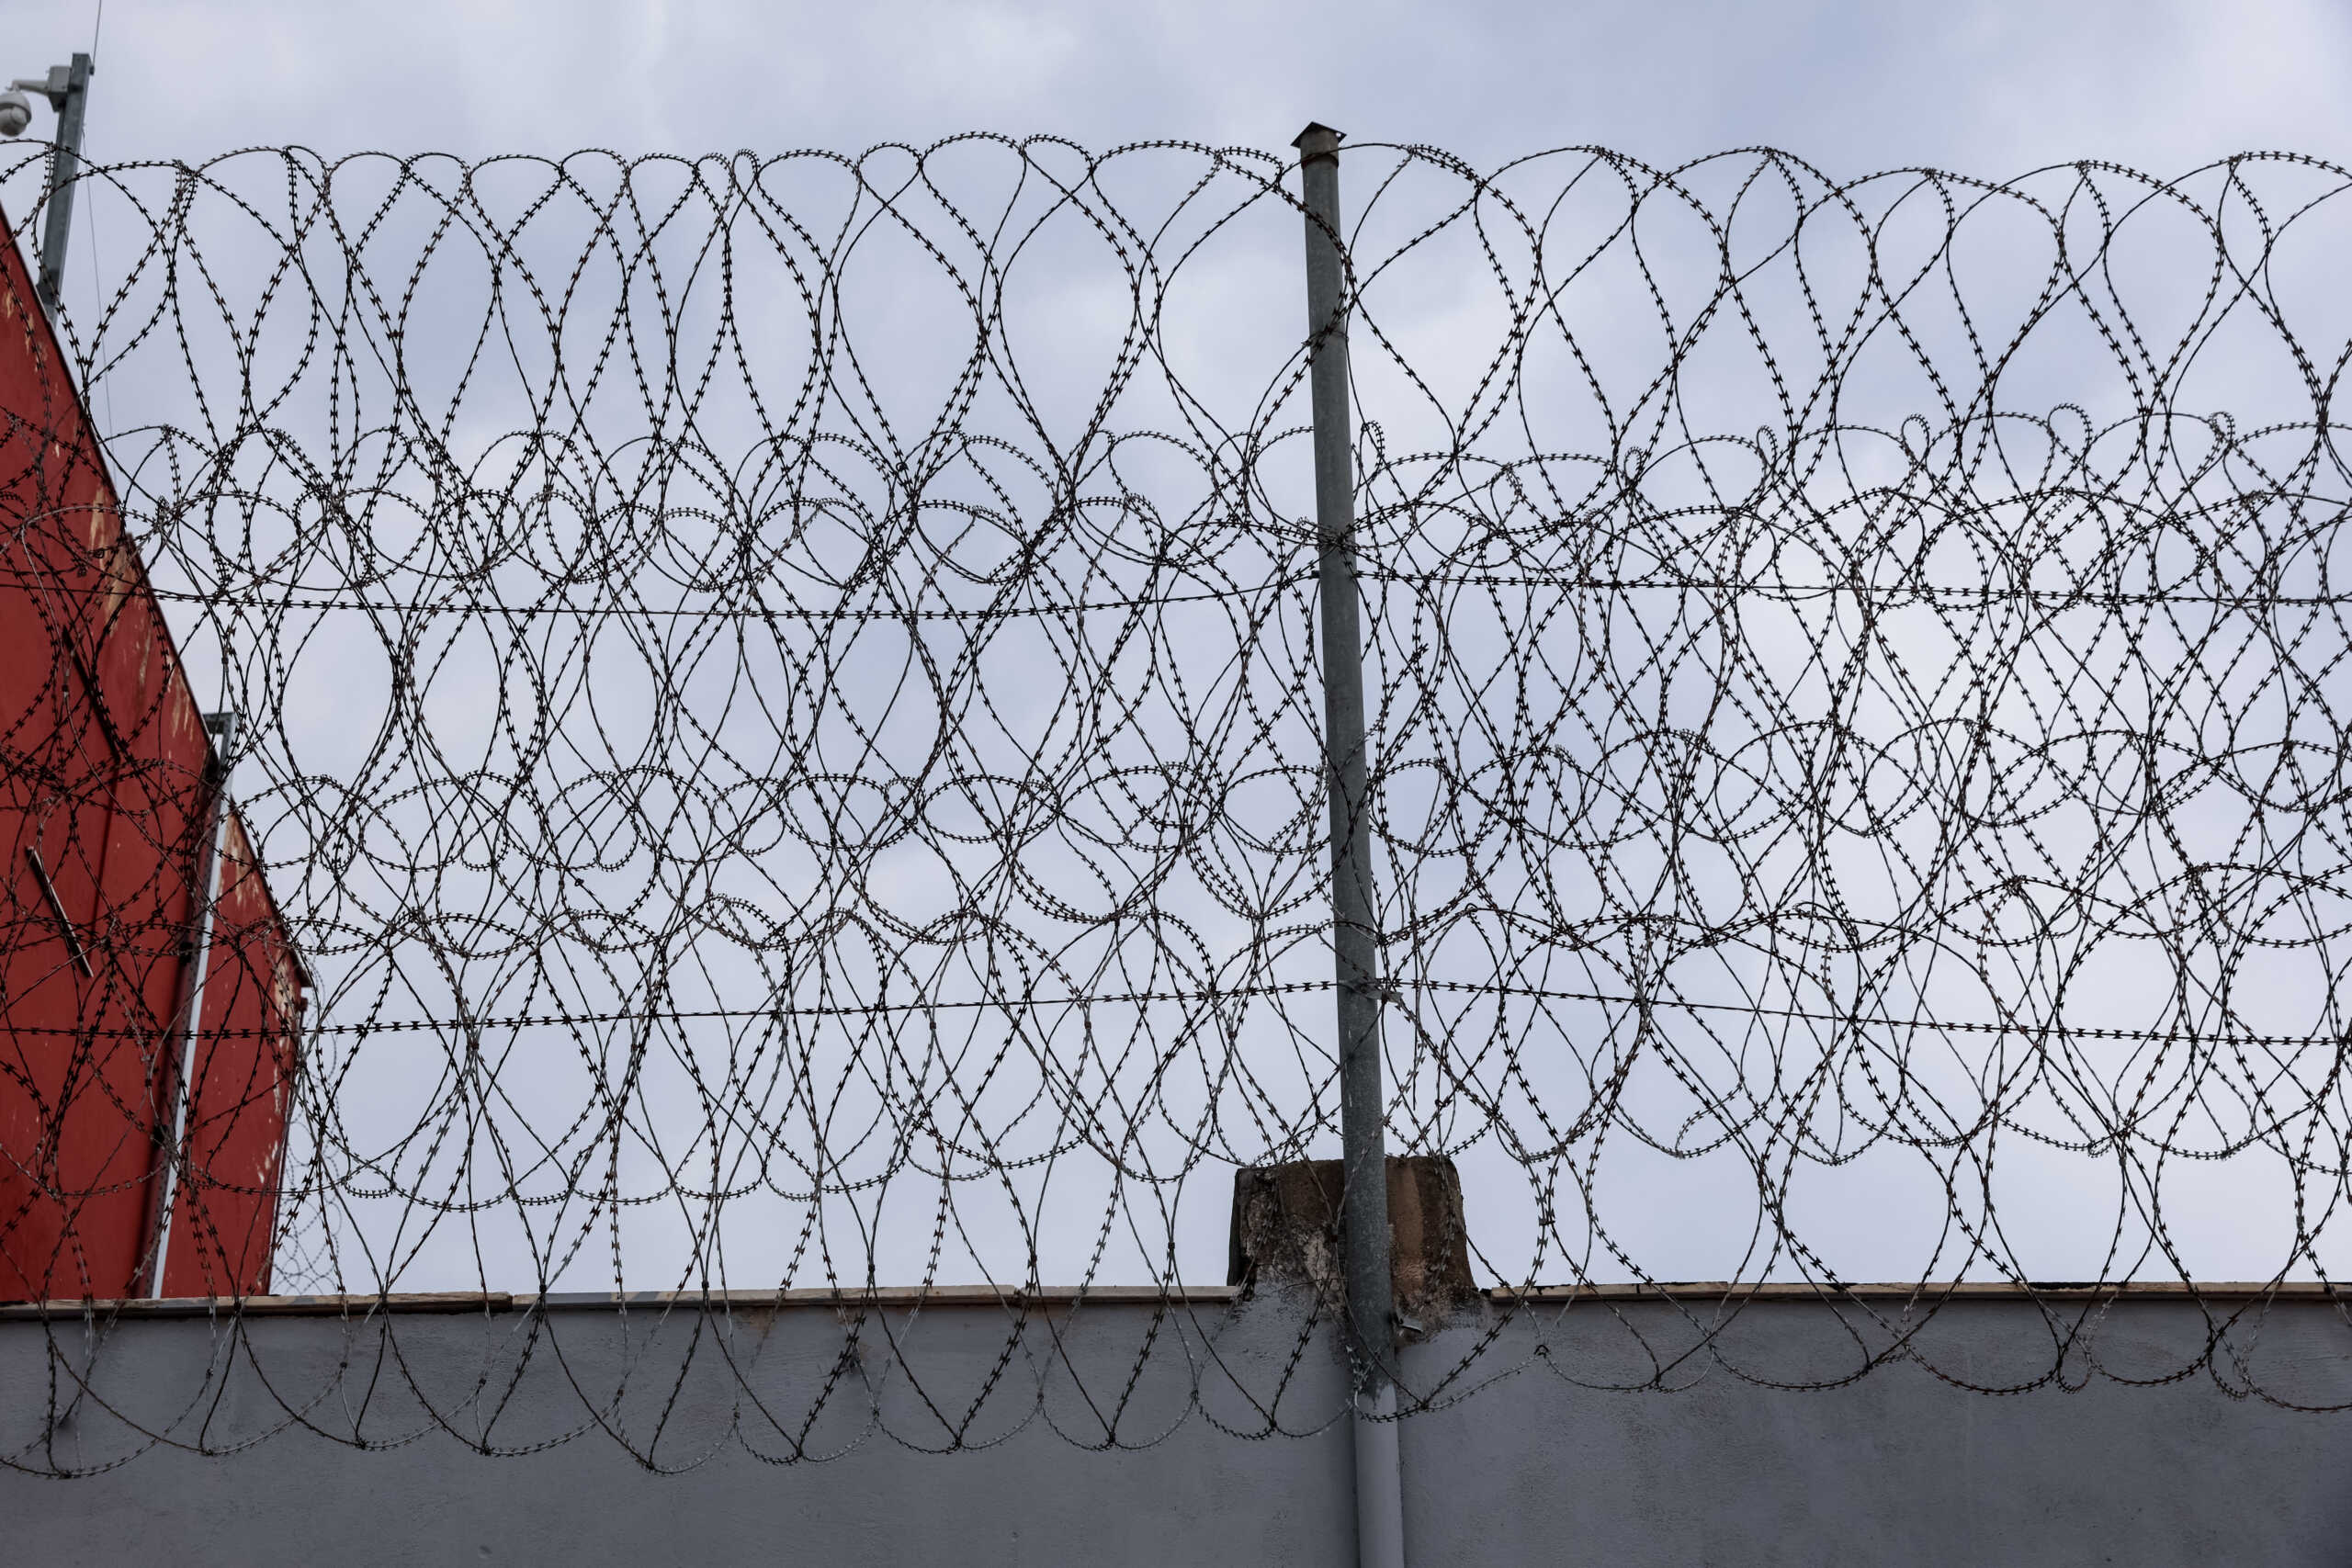 Κρατούνται υποδιευθυντής και υπάλληλοι των φυλακών Ιωαννίνων μετά από μεγάλη αστυνομική επιχείρηση